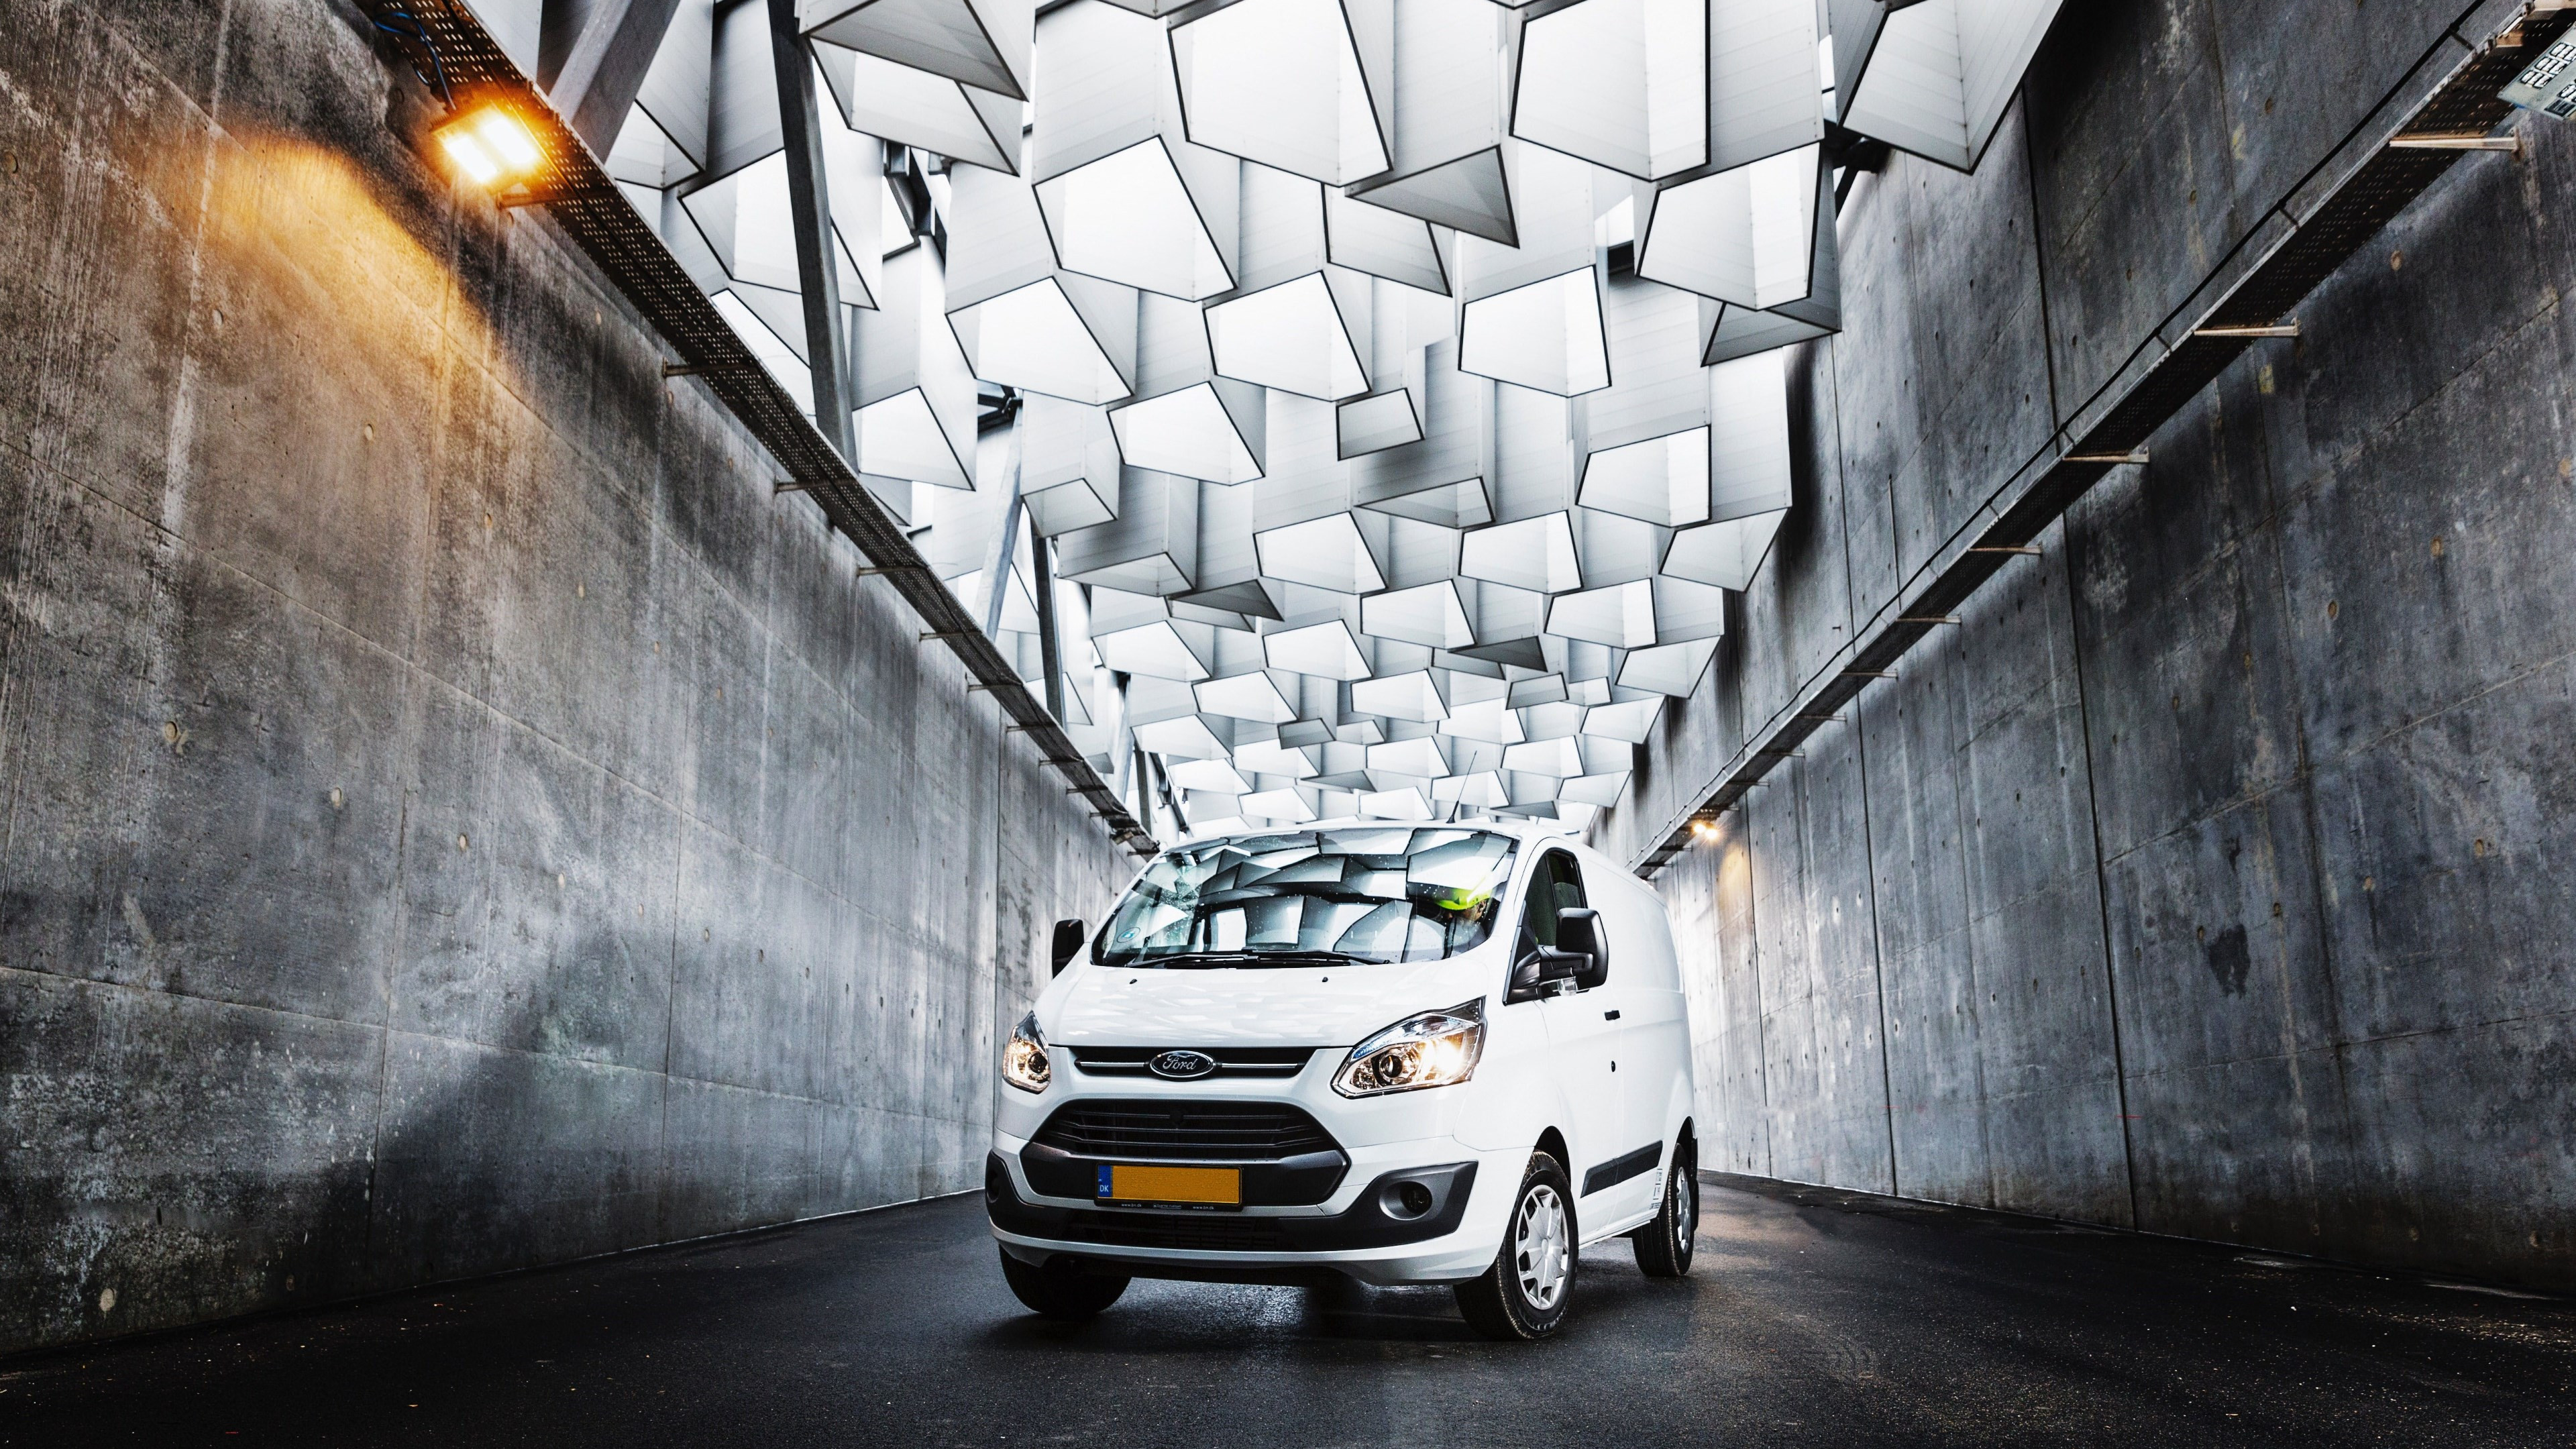 Ford van on the streets of Copenhagen wallpaper 3840x2160